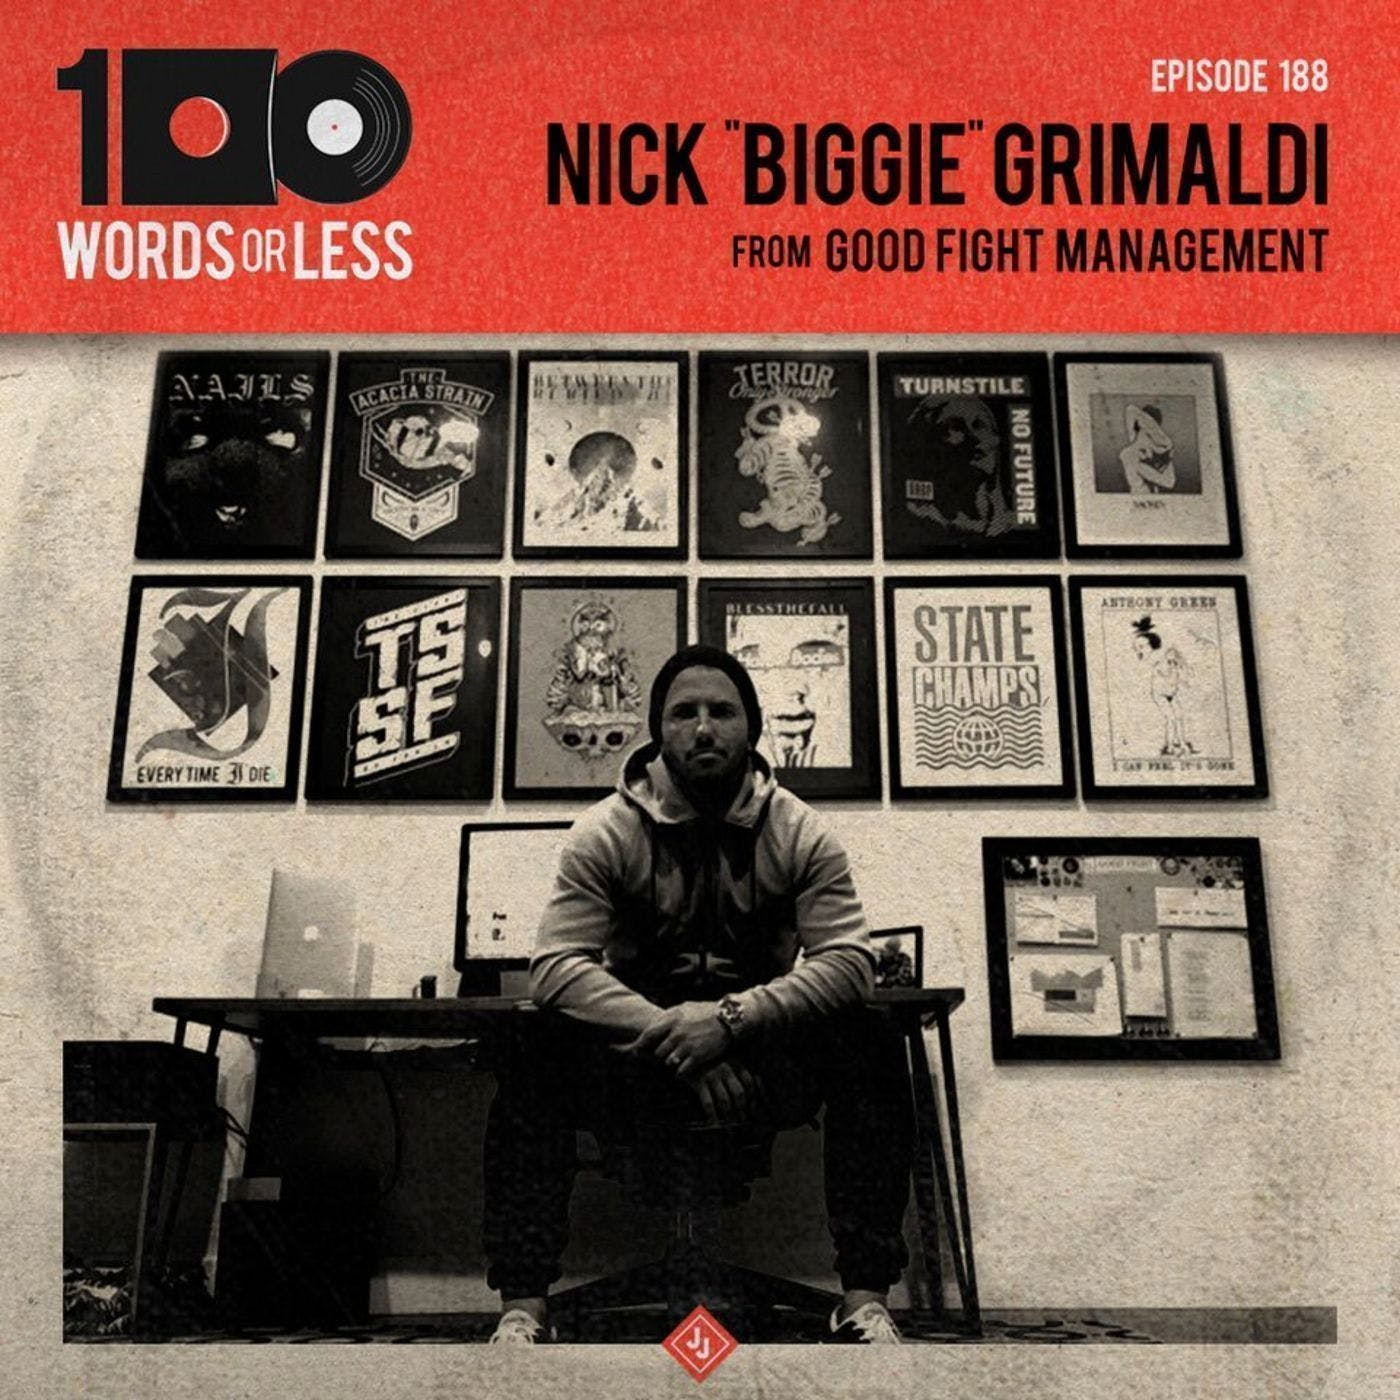 Nick "Biggie" Grimaldi from Good Fight Management